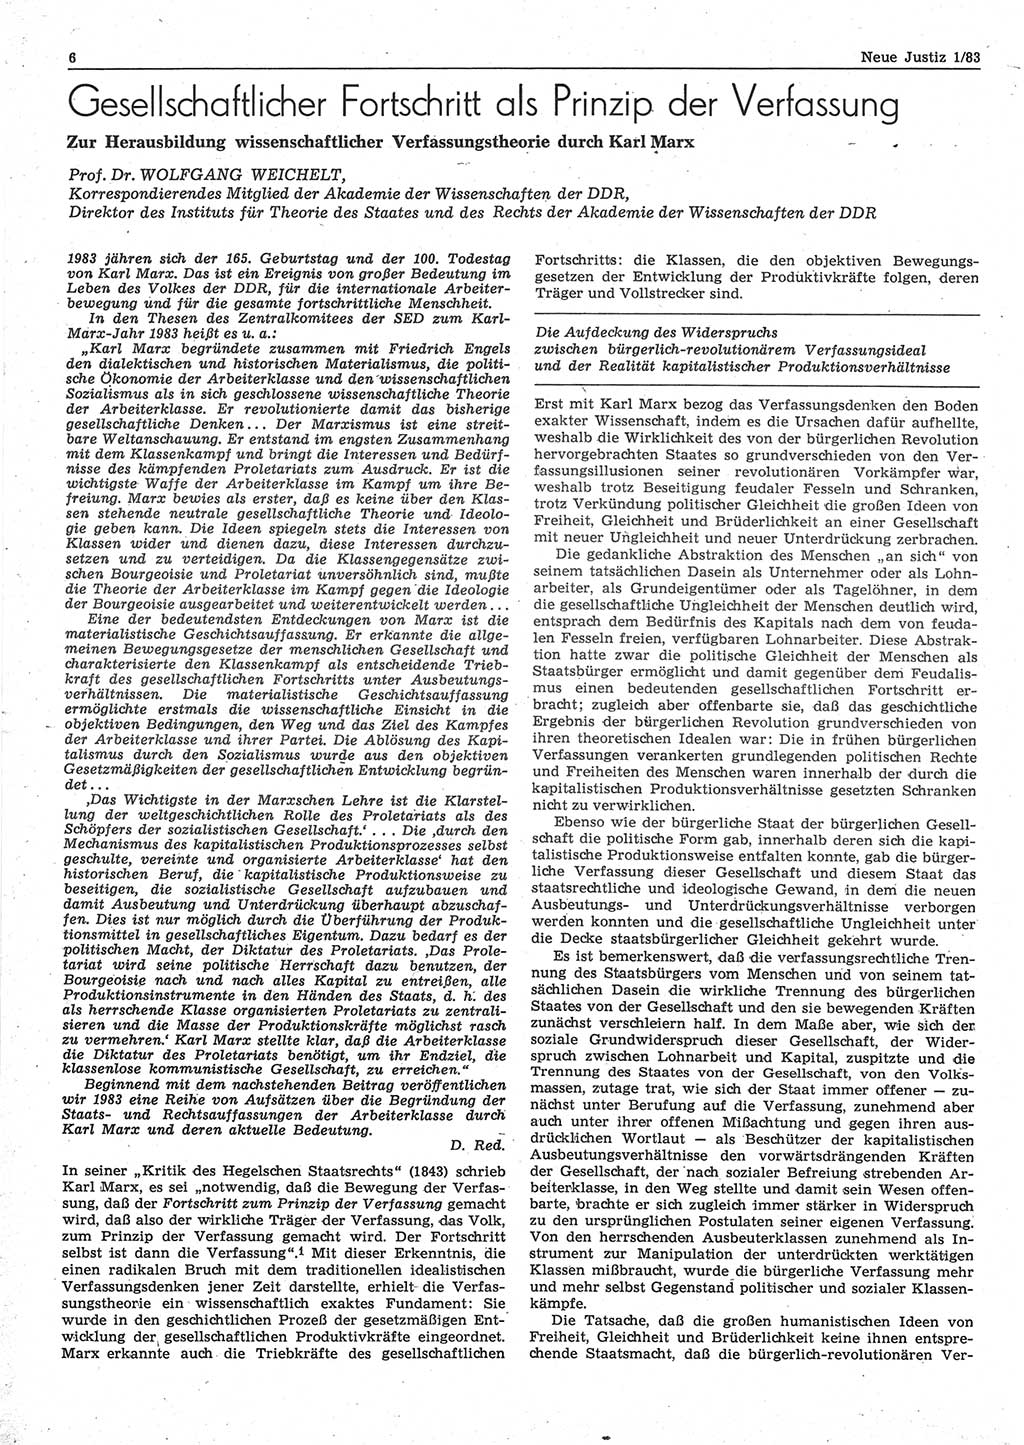 Neue Justiz (NJ), Zeitschrift für sozialistisches Recht und Gesetzlichkeit [Deutsche Demokratische Republik (DDR)], 37. Jahrgang 1983, Seite 6 (NJ DDR 1983, S. 6)